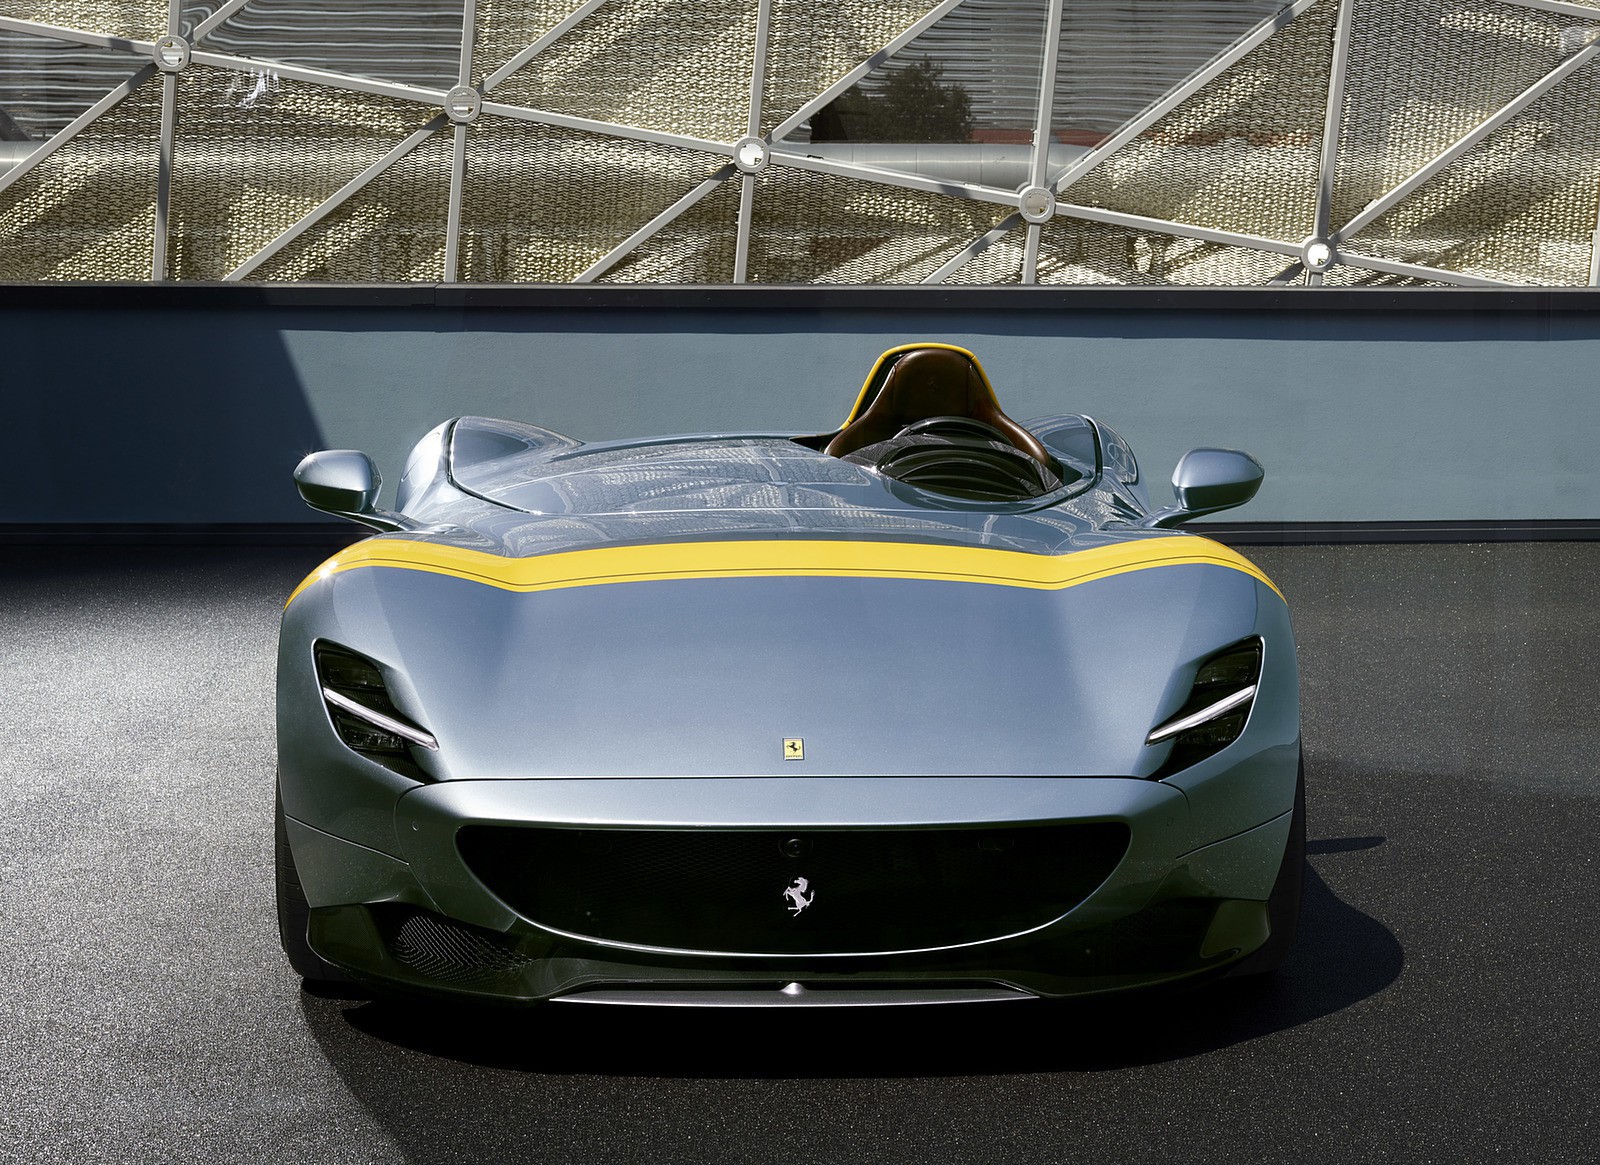 Mỗi chiếc siêu xe Ferrari Monza có giá lên đến 1,75 triệu USD